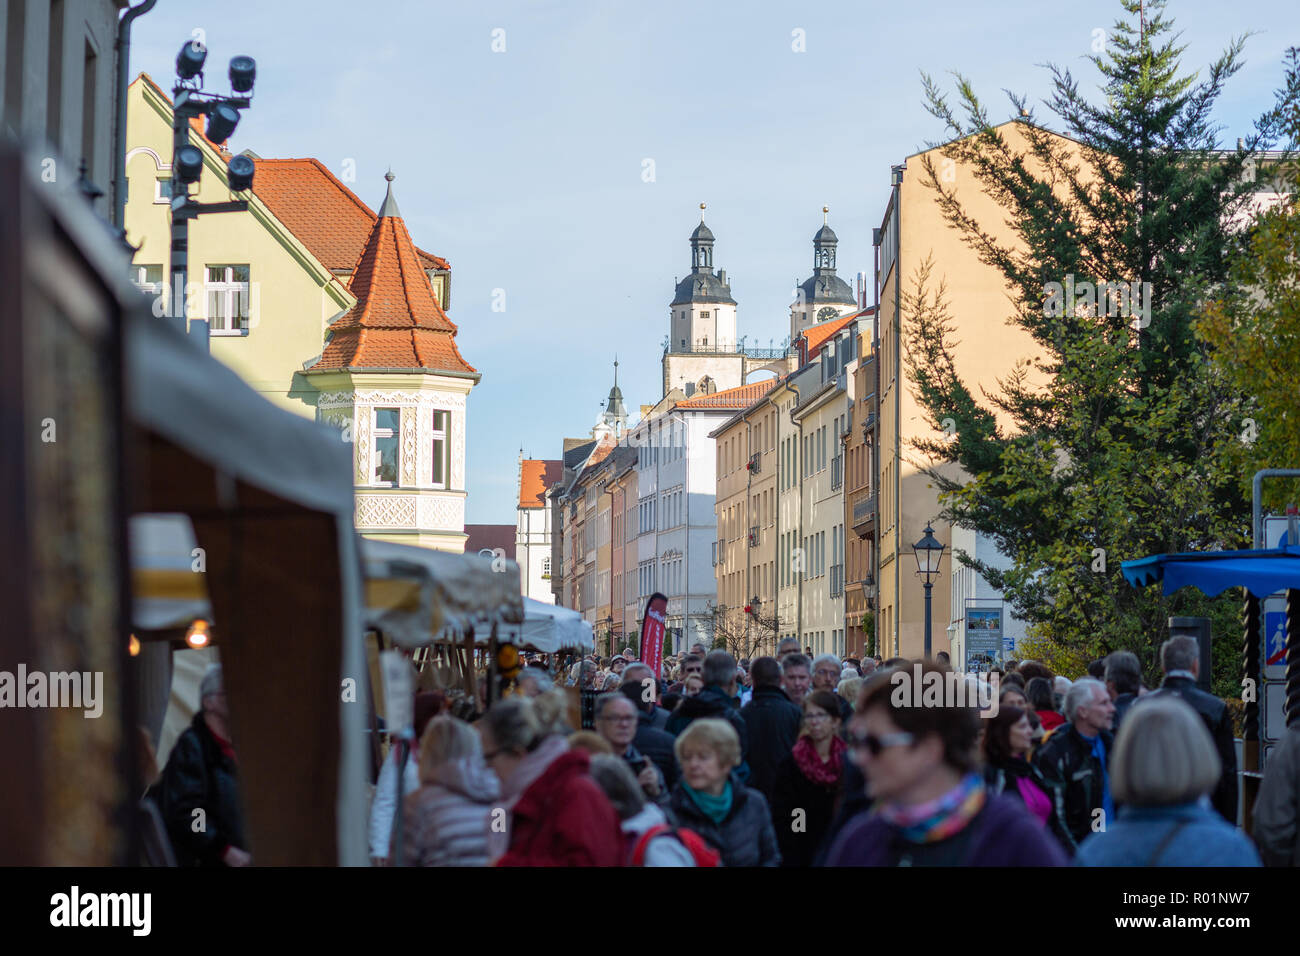 Wittenberg, Deutschland, 31. Oktober 2018, dem Reformationstag, historische Festspiele, Kredit: Rene Schmidt/Alamy leben Nachrichten Stockfoto